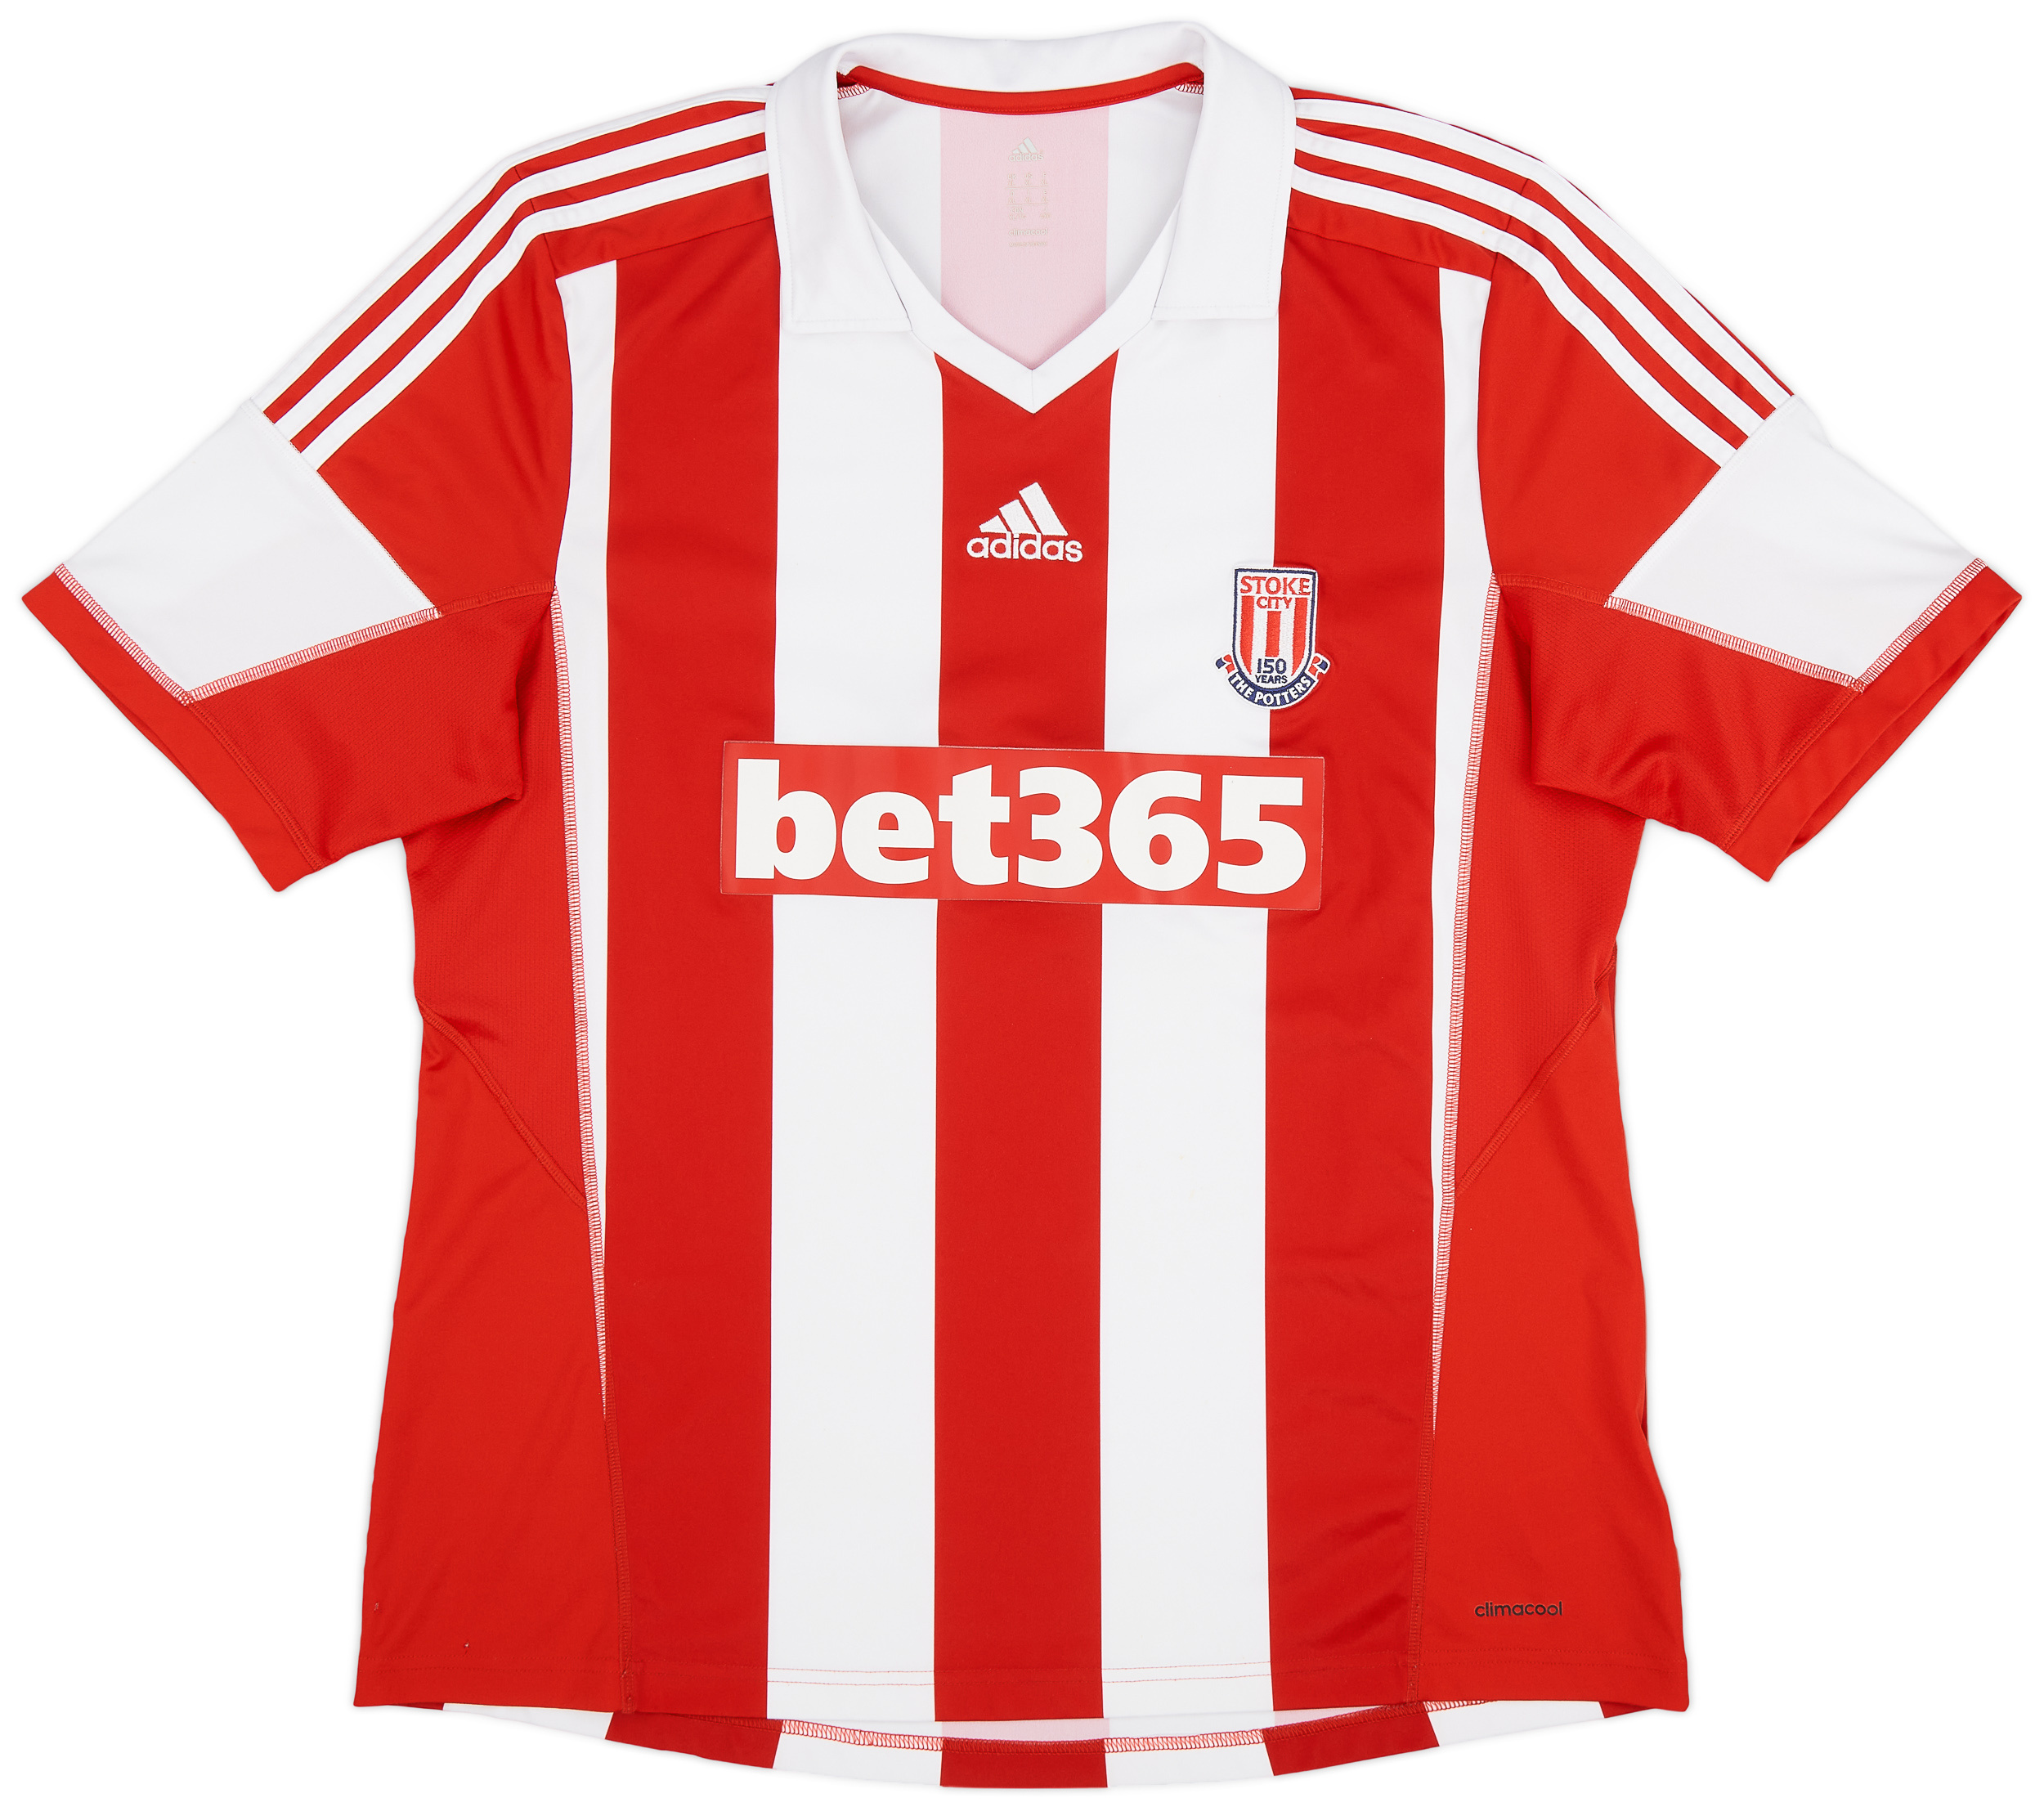 2013-14 Stoke City '150 Years' Home Shirt - 9/10 - ()